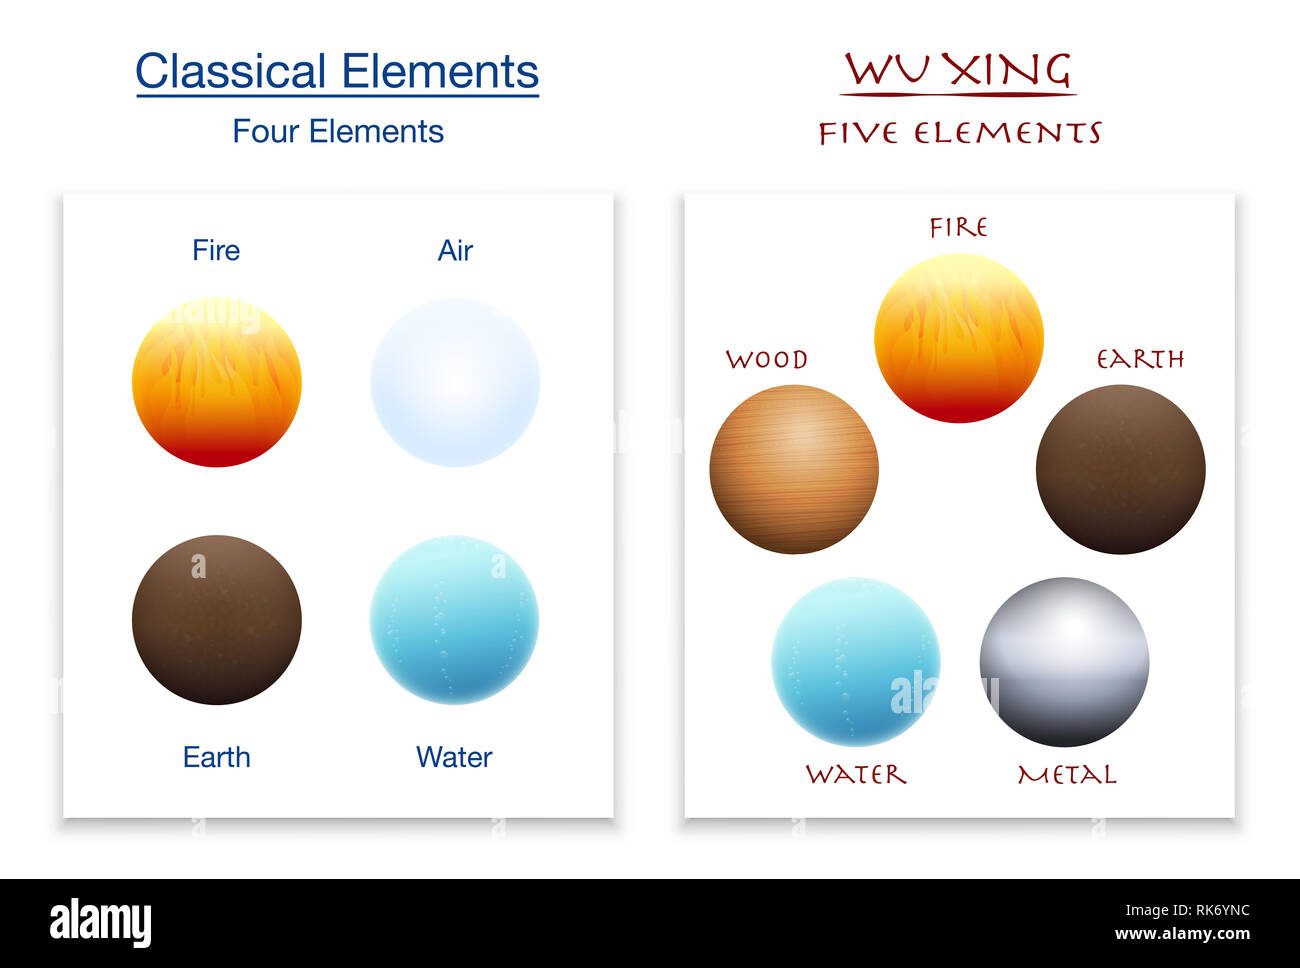 Quatre éléments classiques et cinq éléments de Wu Xing en comparaison - illustration sur fond blanc. Banque D'Images